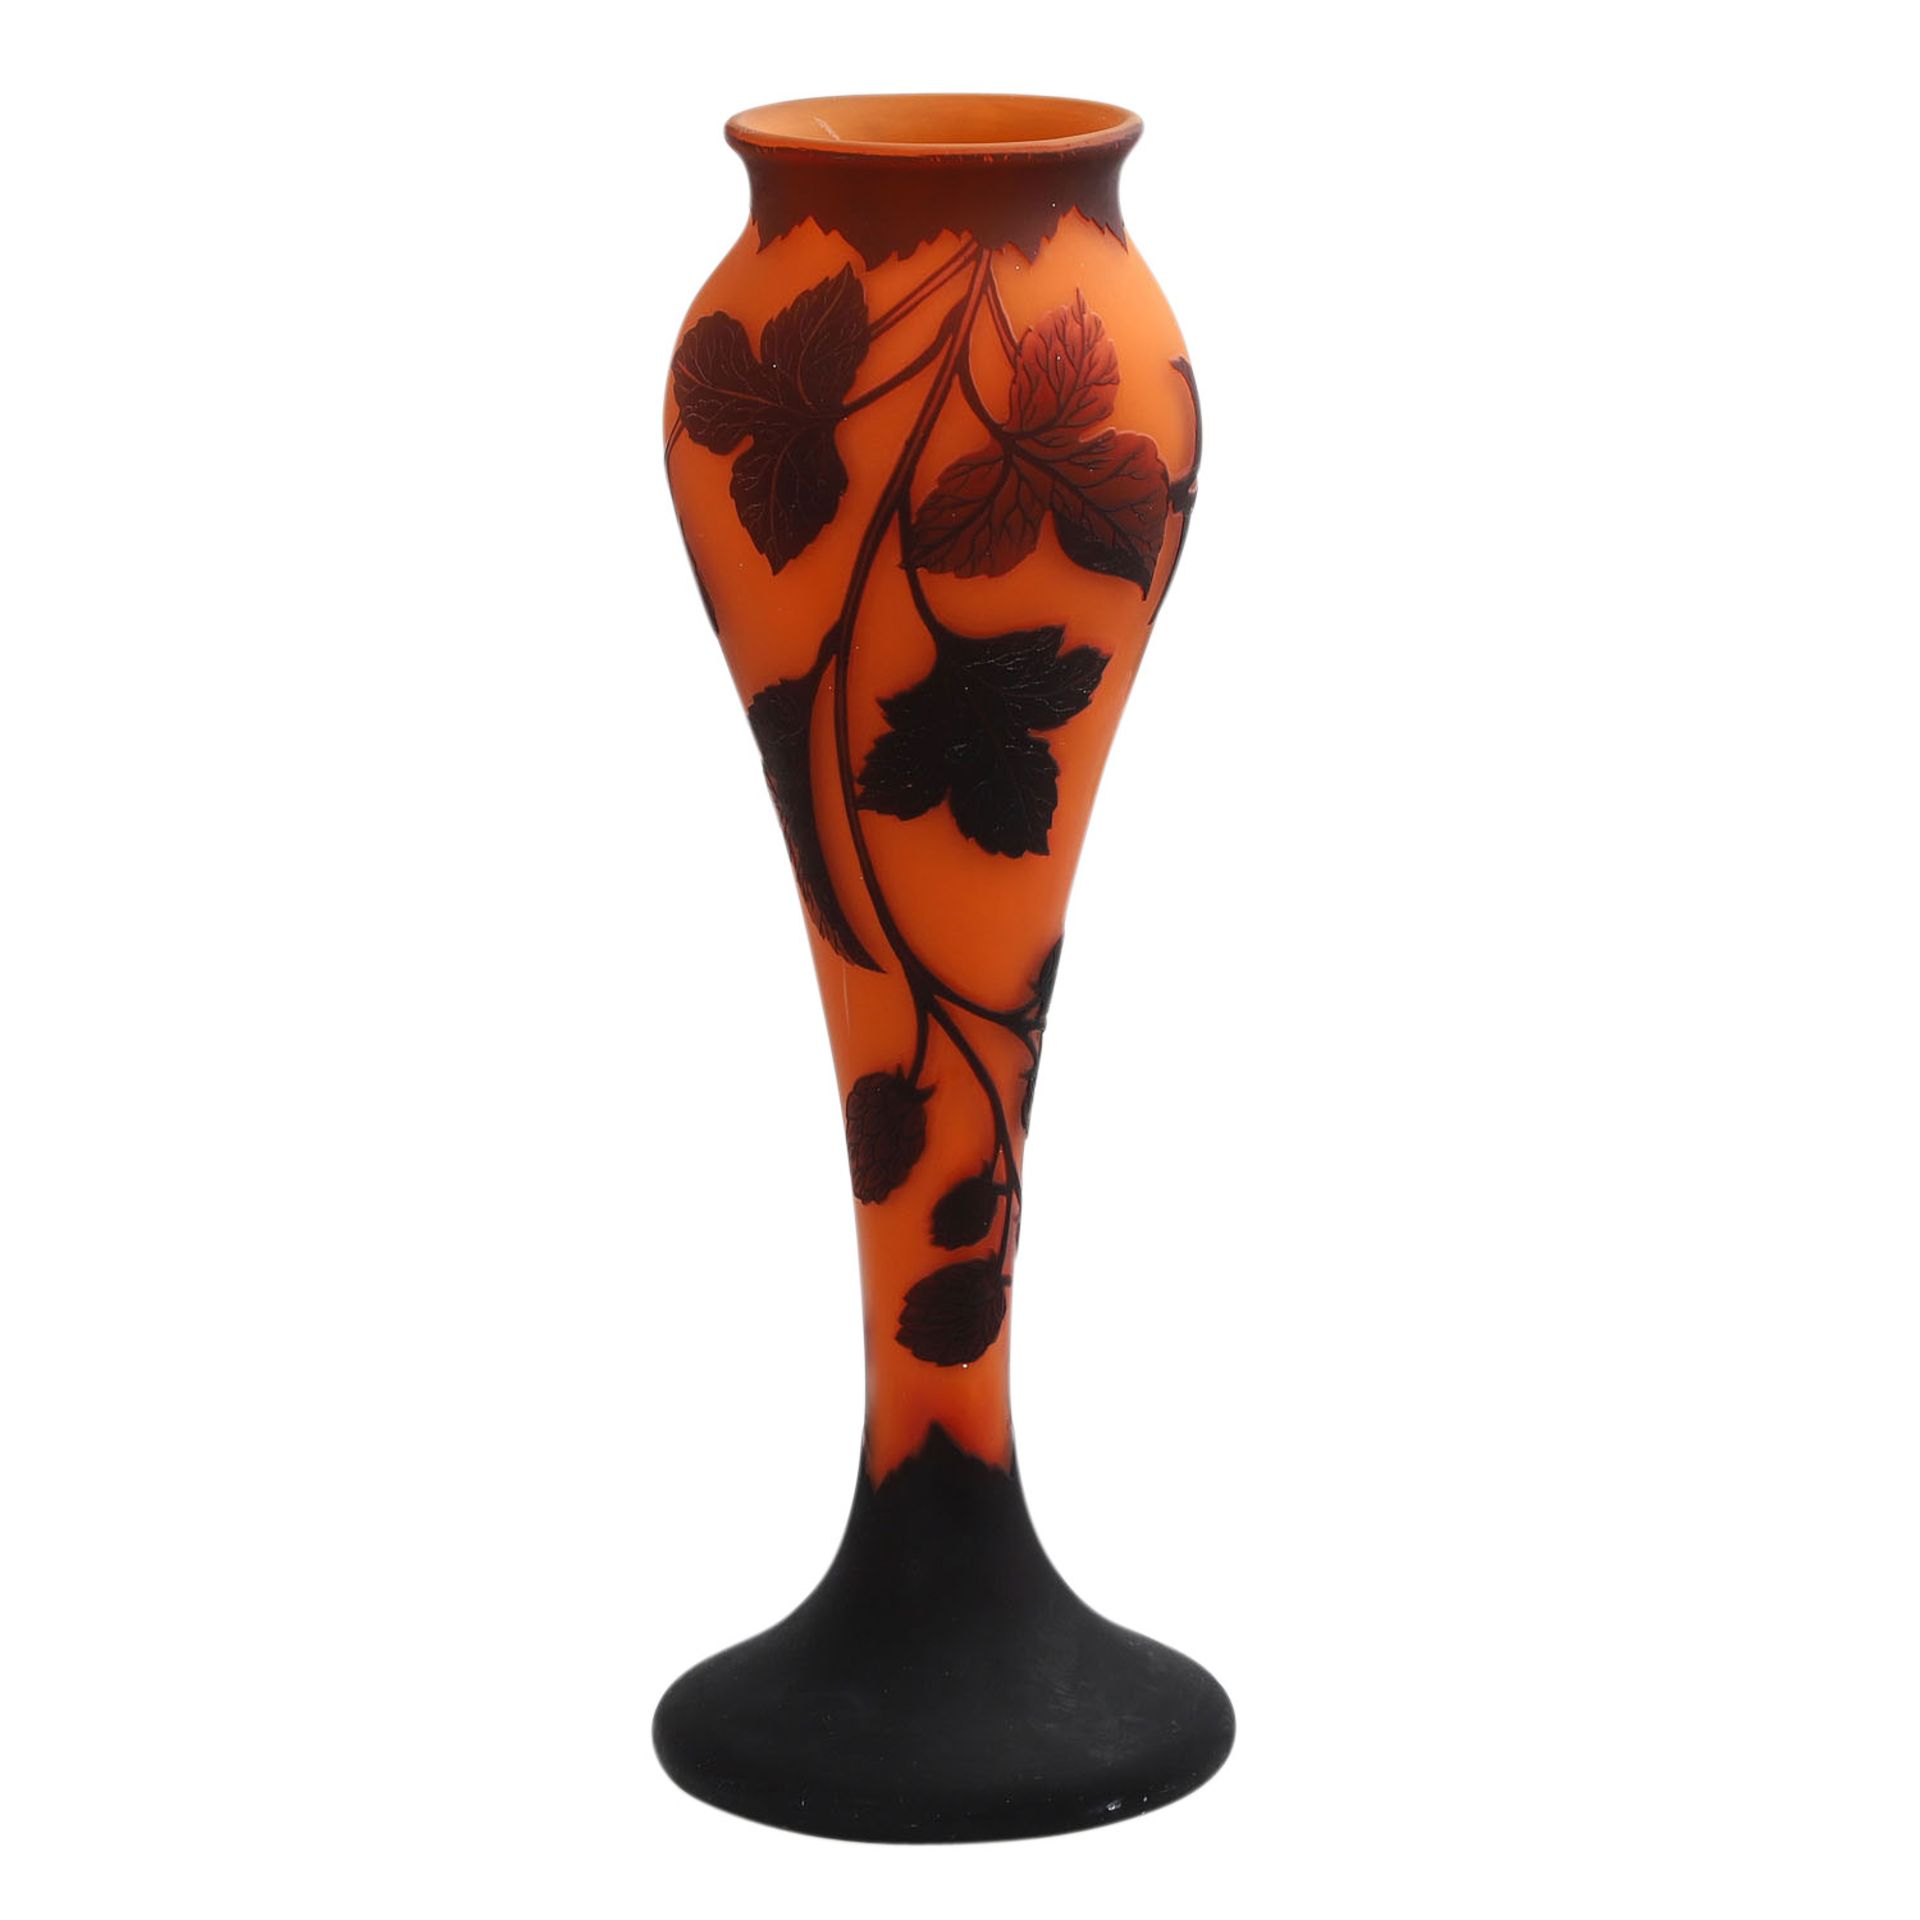 Vase 'Hopfenzweige', 20. Jh..Keulenförmige Vase auf Rundstand, überfangen, orange, braun, mit